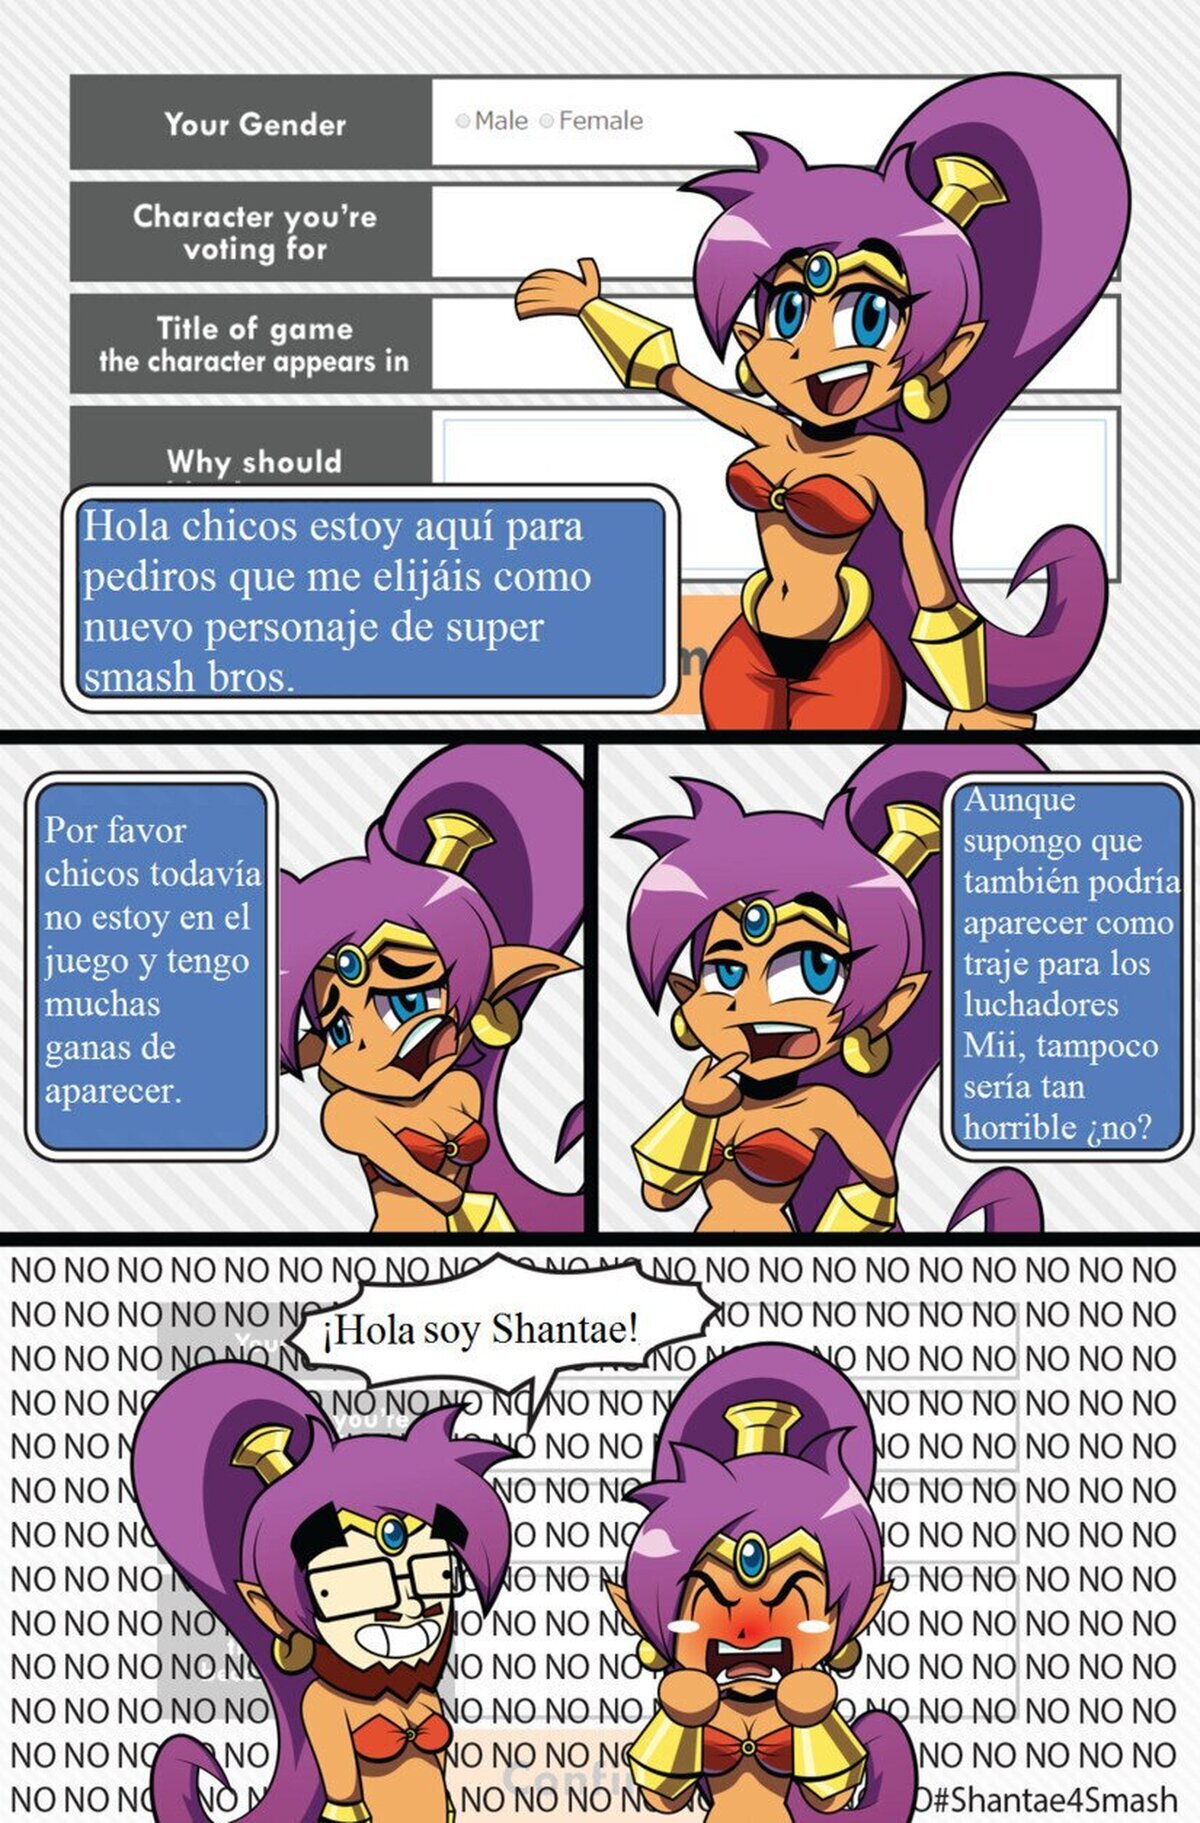 Es inútil Shantae, Sakurai acabará con todos nosotros